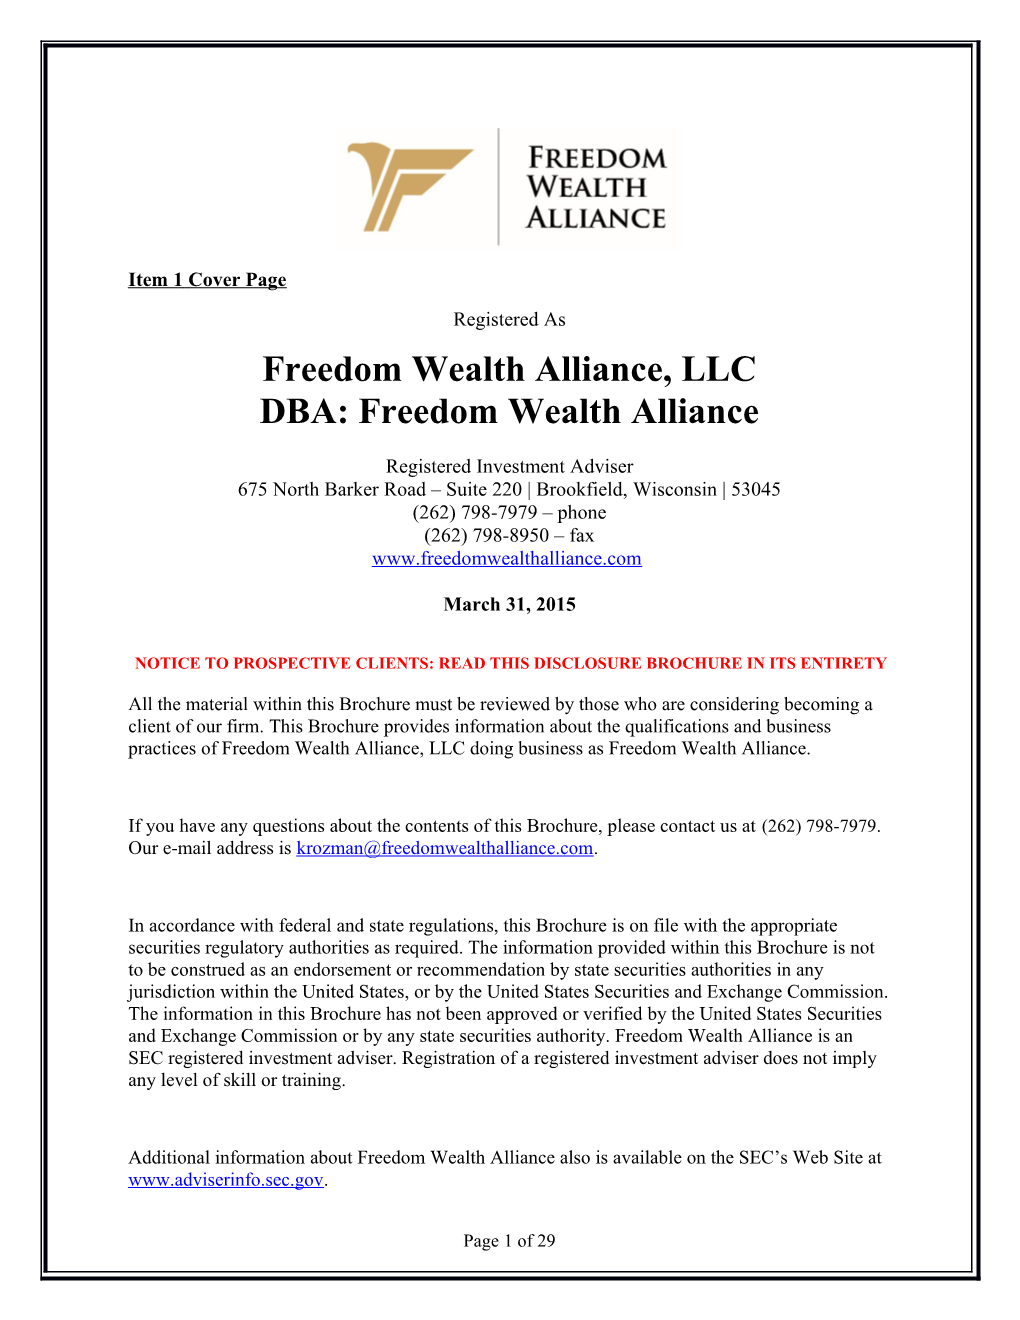 Freedom Wealth Alliance, LLC